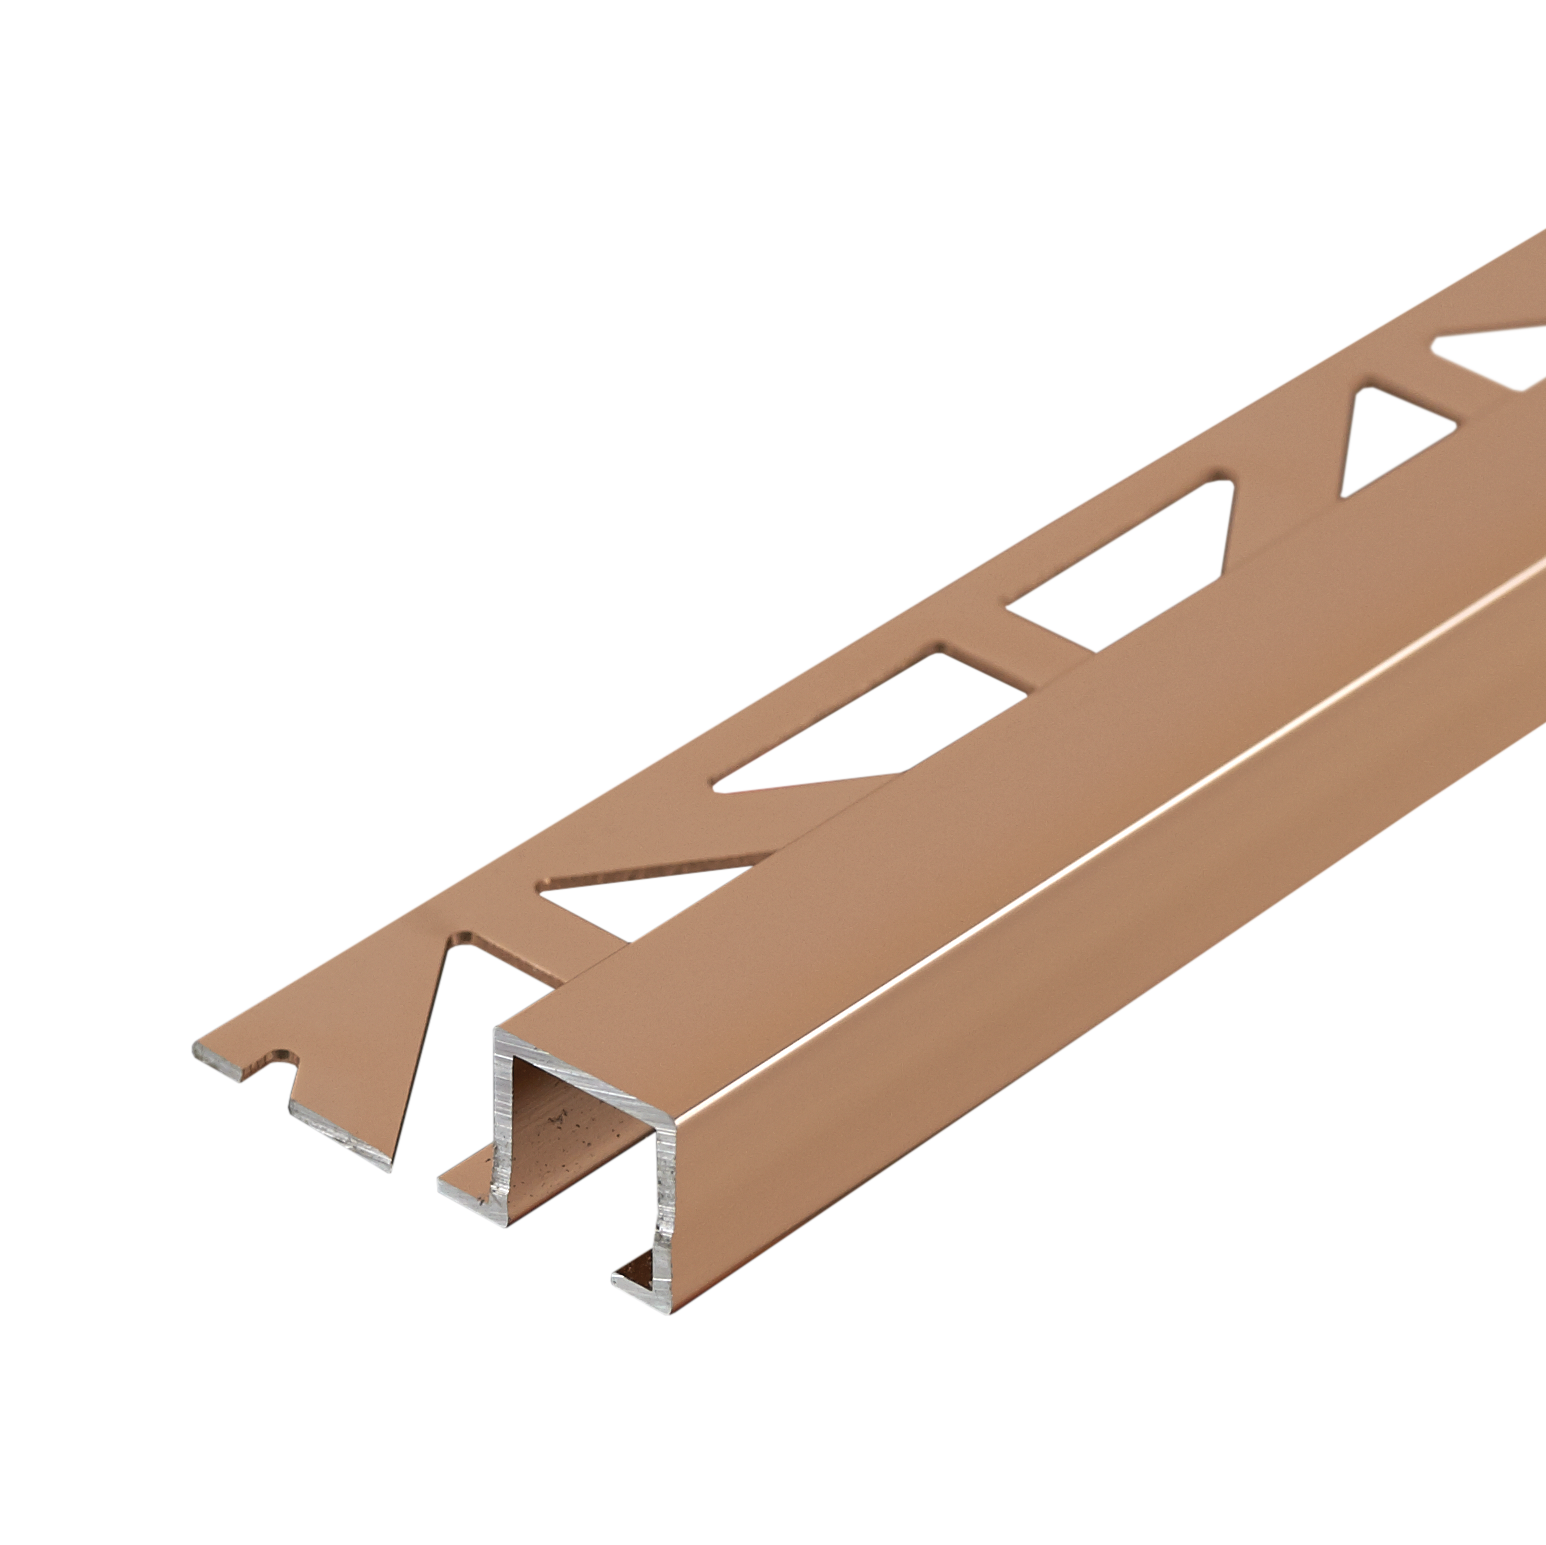 Dural Squareline Profile 11/32 in. Square Edge - Copper - Anodized - Tile edge Trim